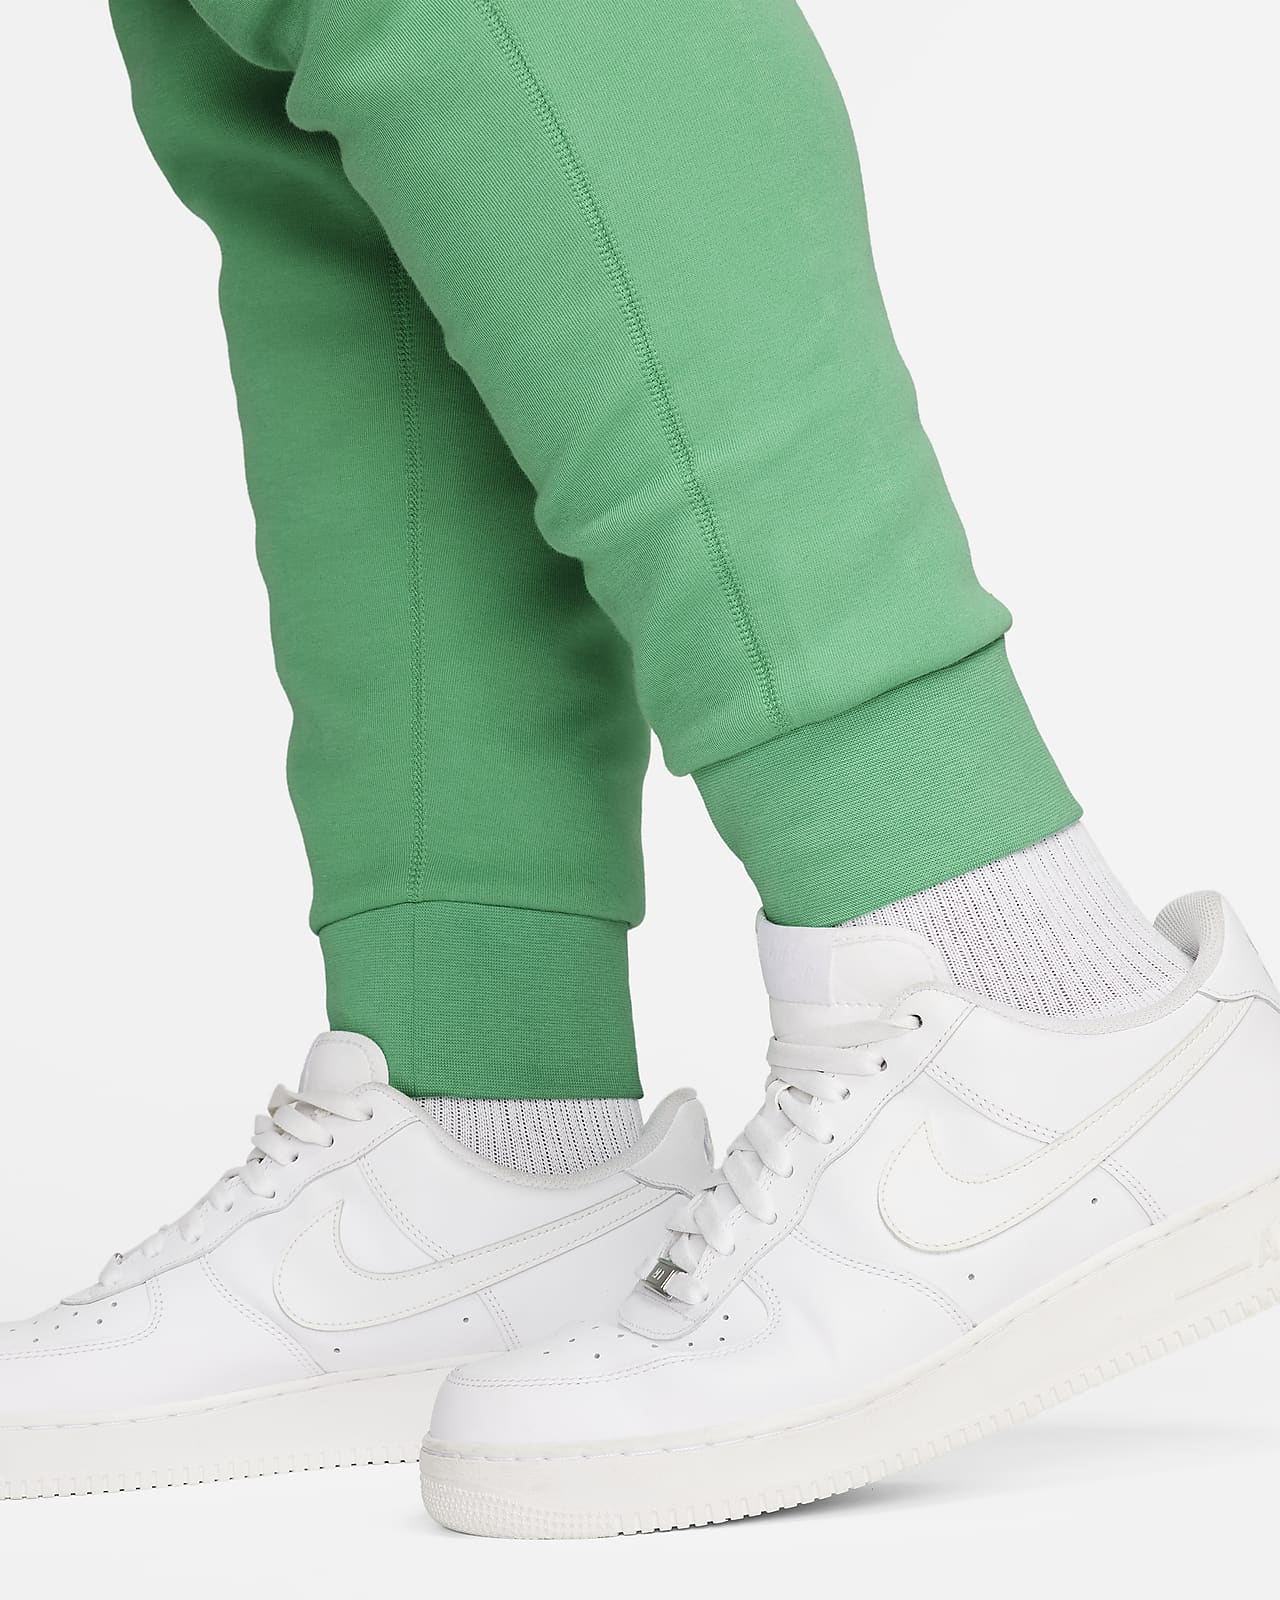 Pantalon de jogging Nike Sportswear Tech Fleece pour homme. Nike FR